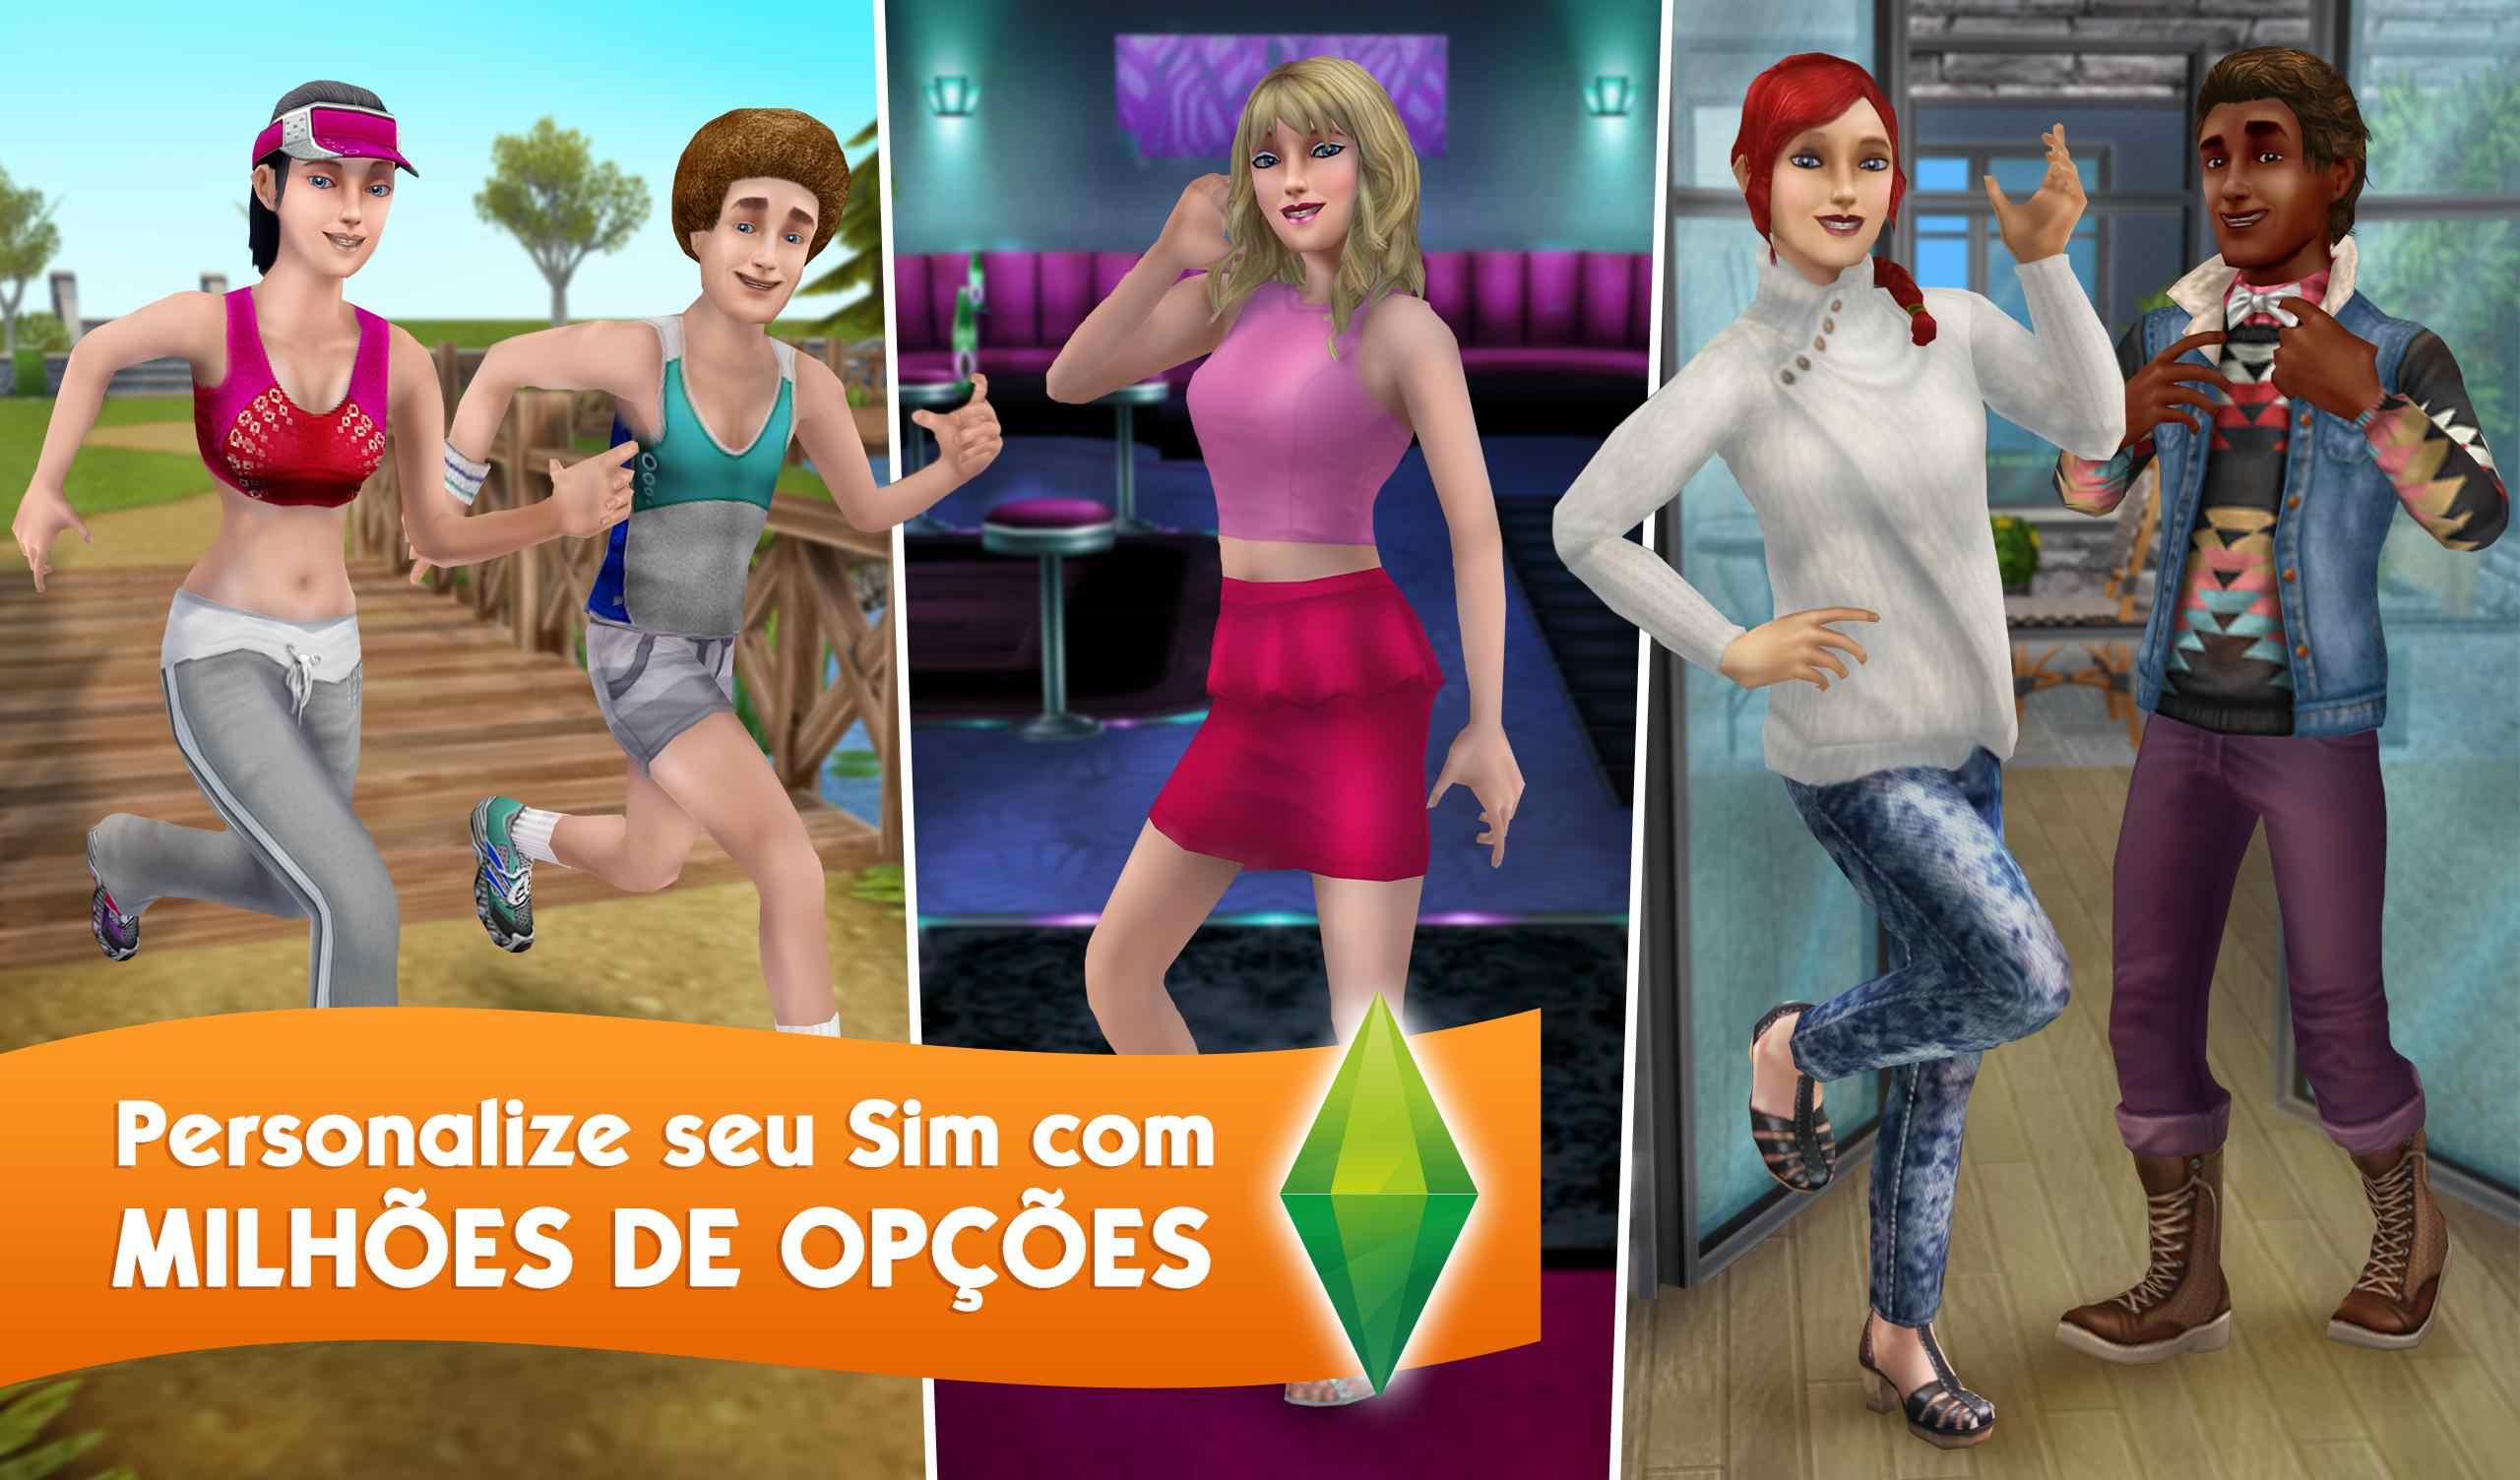 Guia do jogo "The Sims"